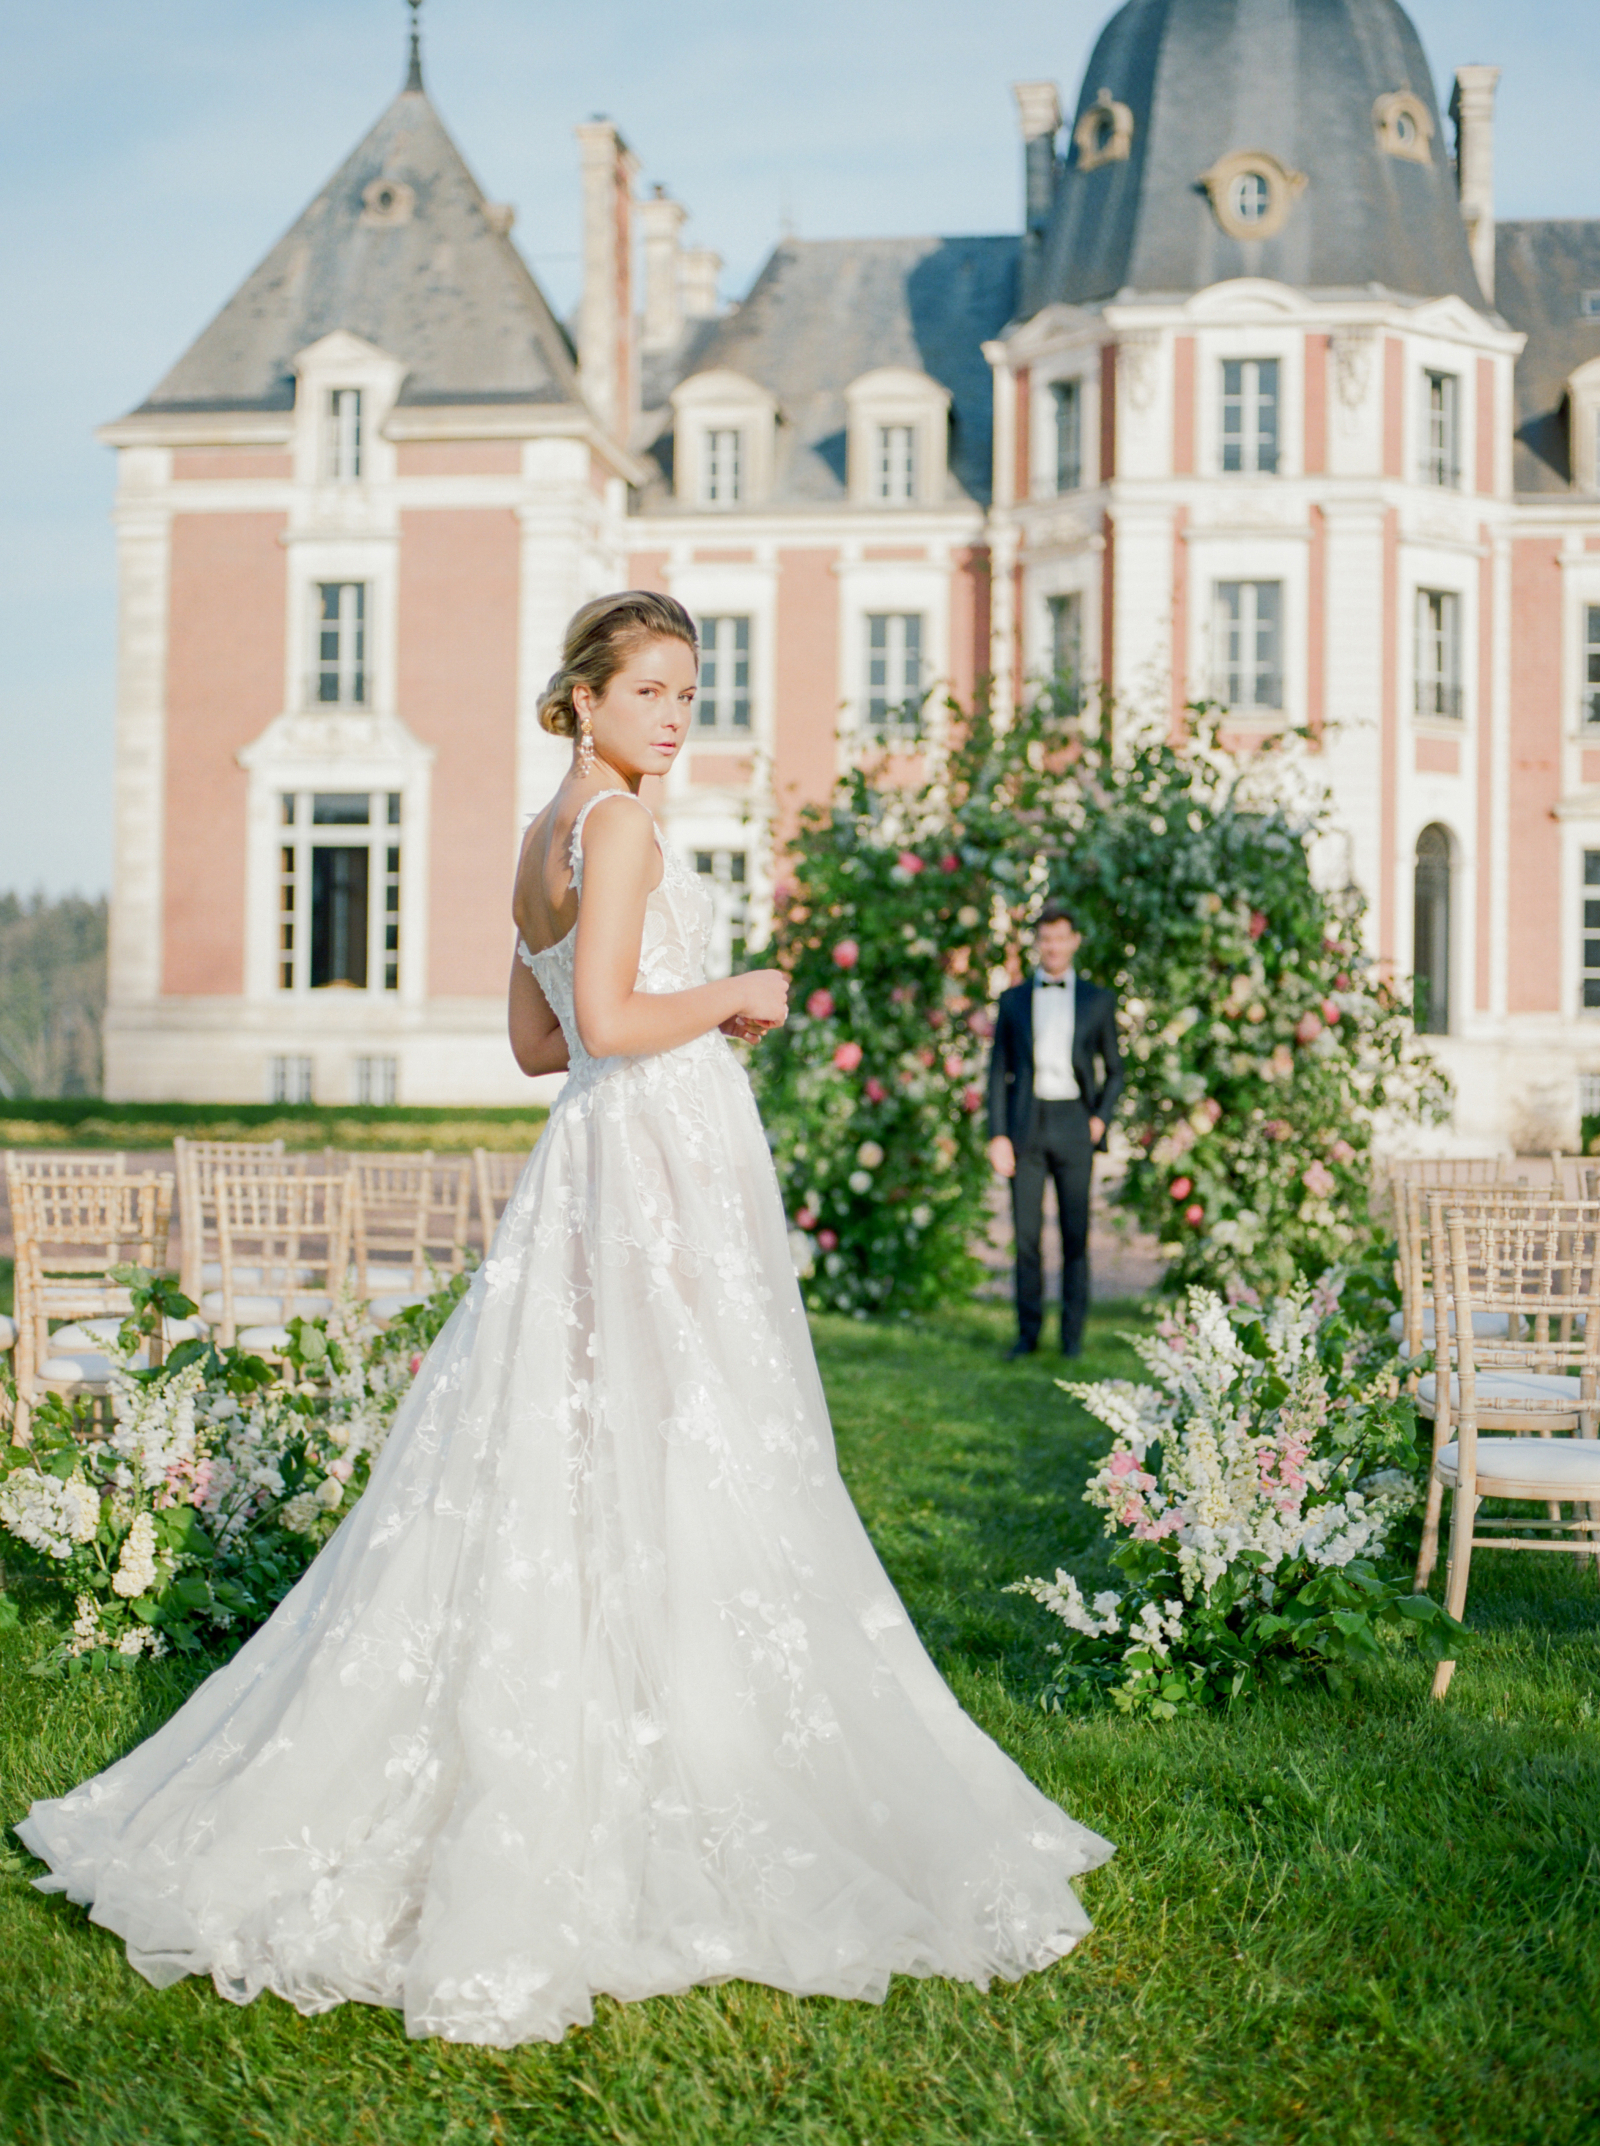 Fairytale wedding at Château de Tourreau – Thomas Audiffren Photography